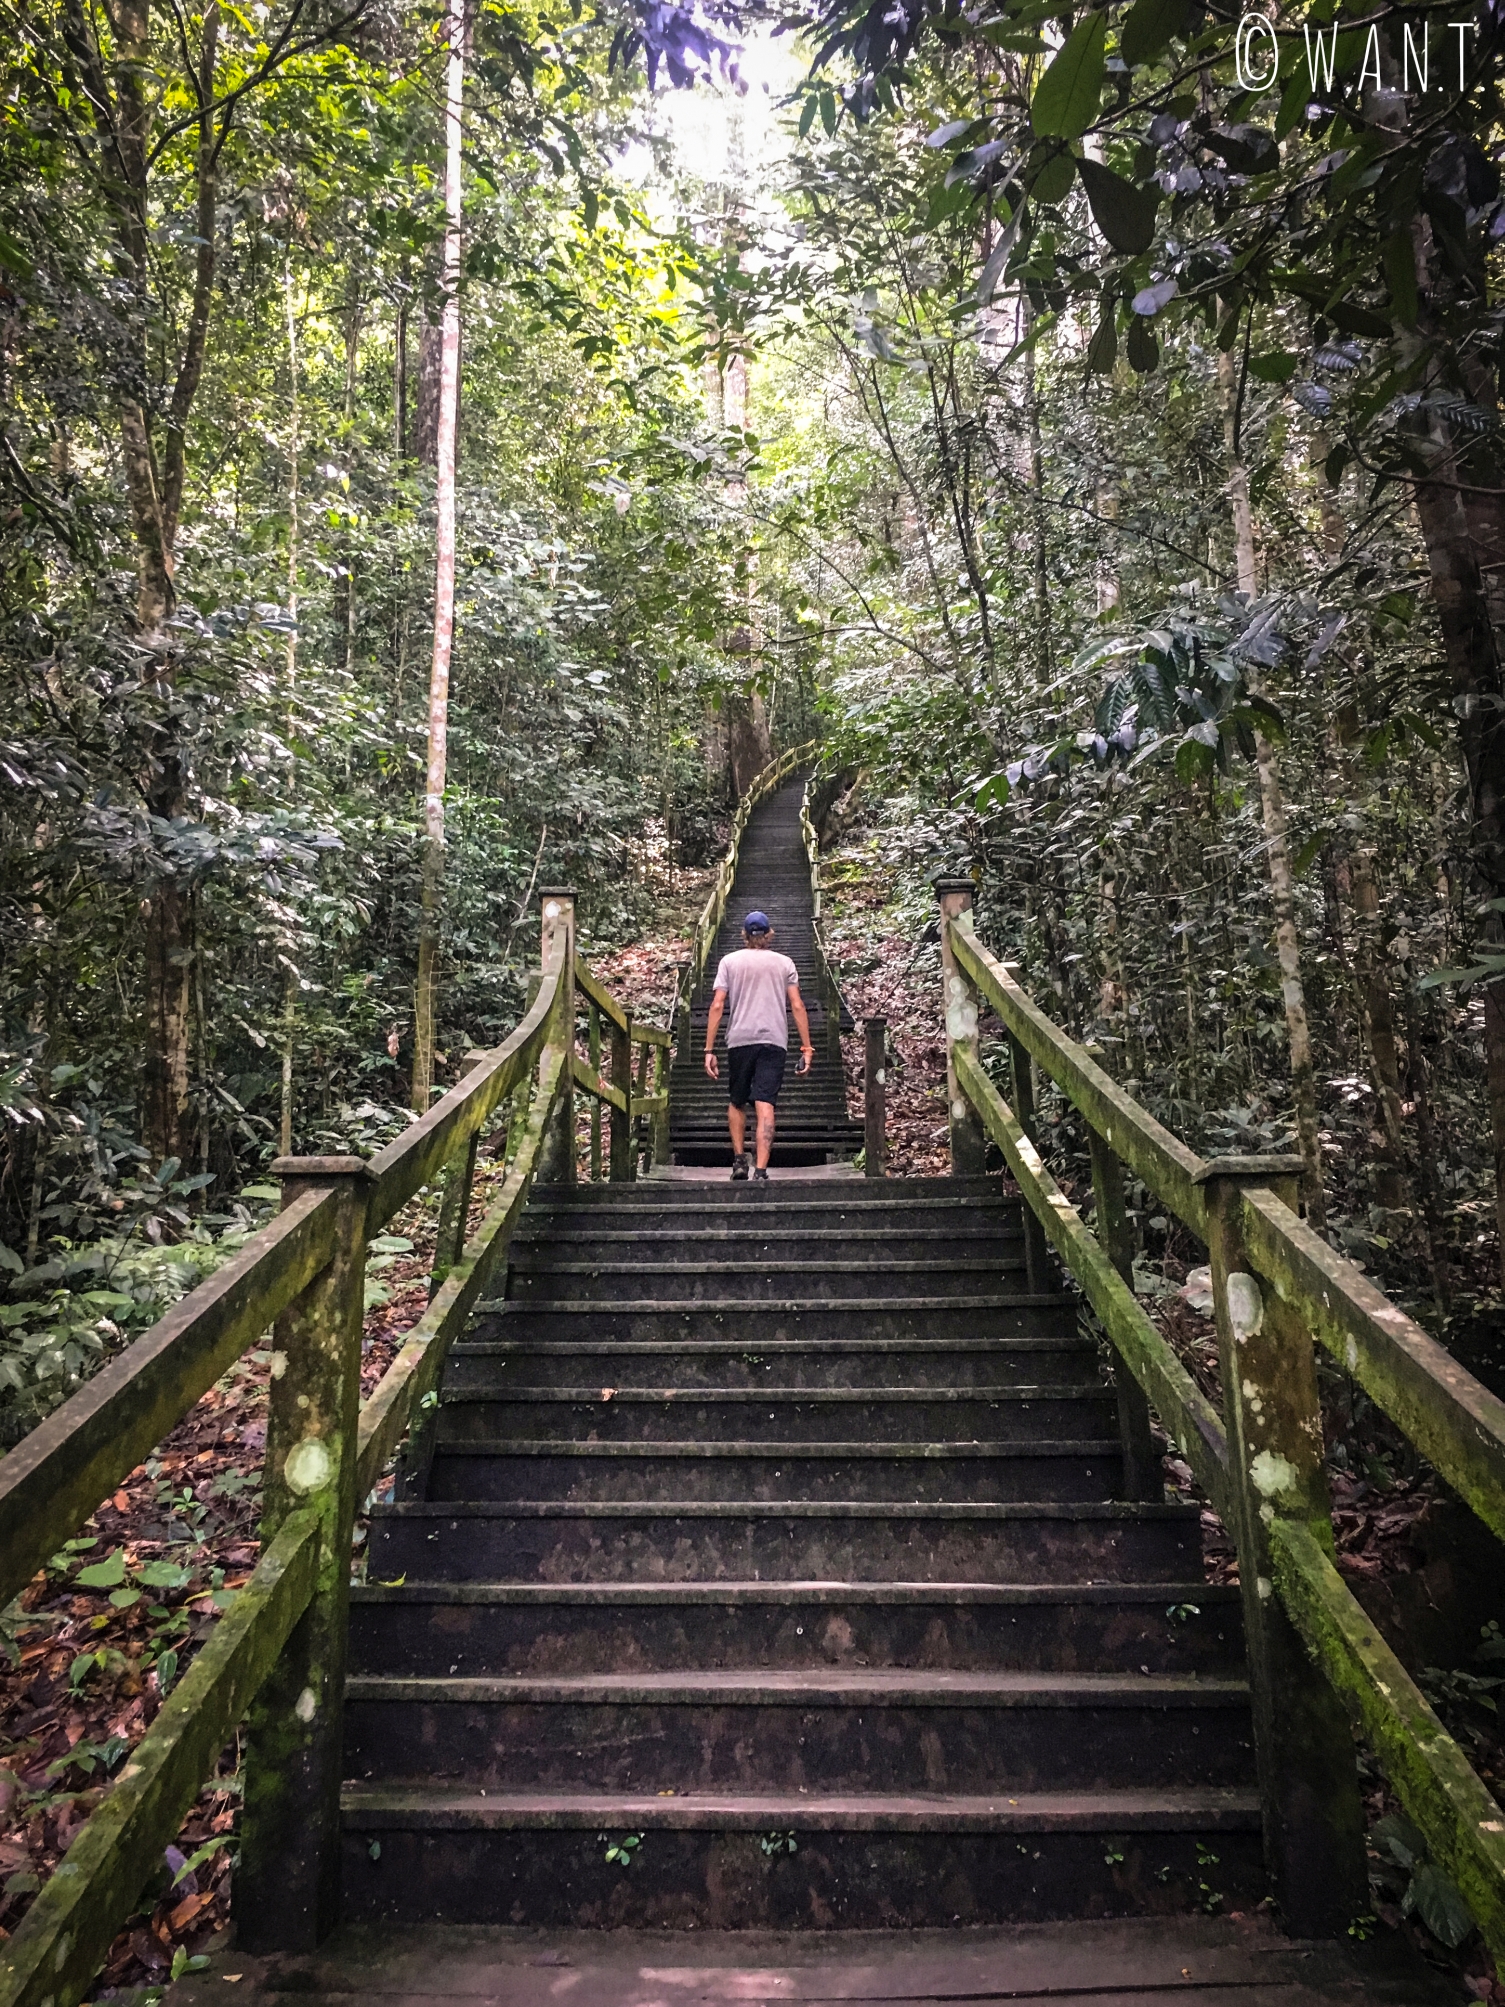 Benjamin dans les escaliers menant à la canopée au Parc national Ulu Temburong au Brunei